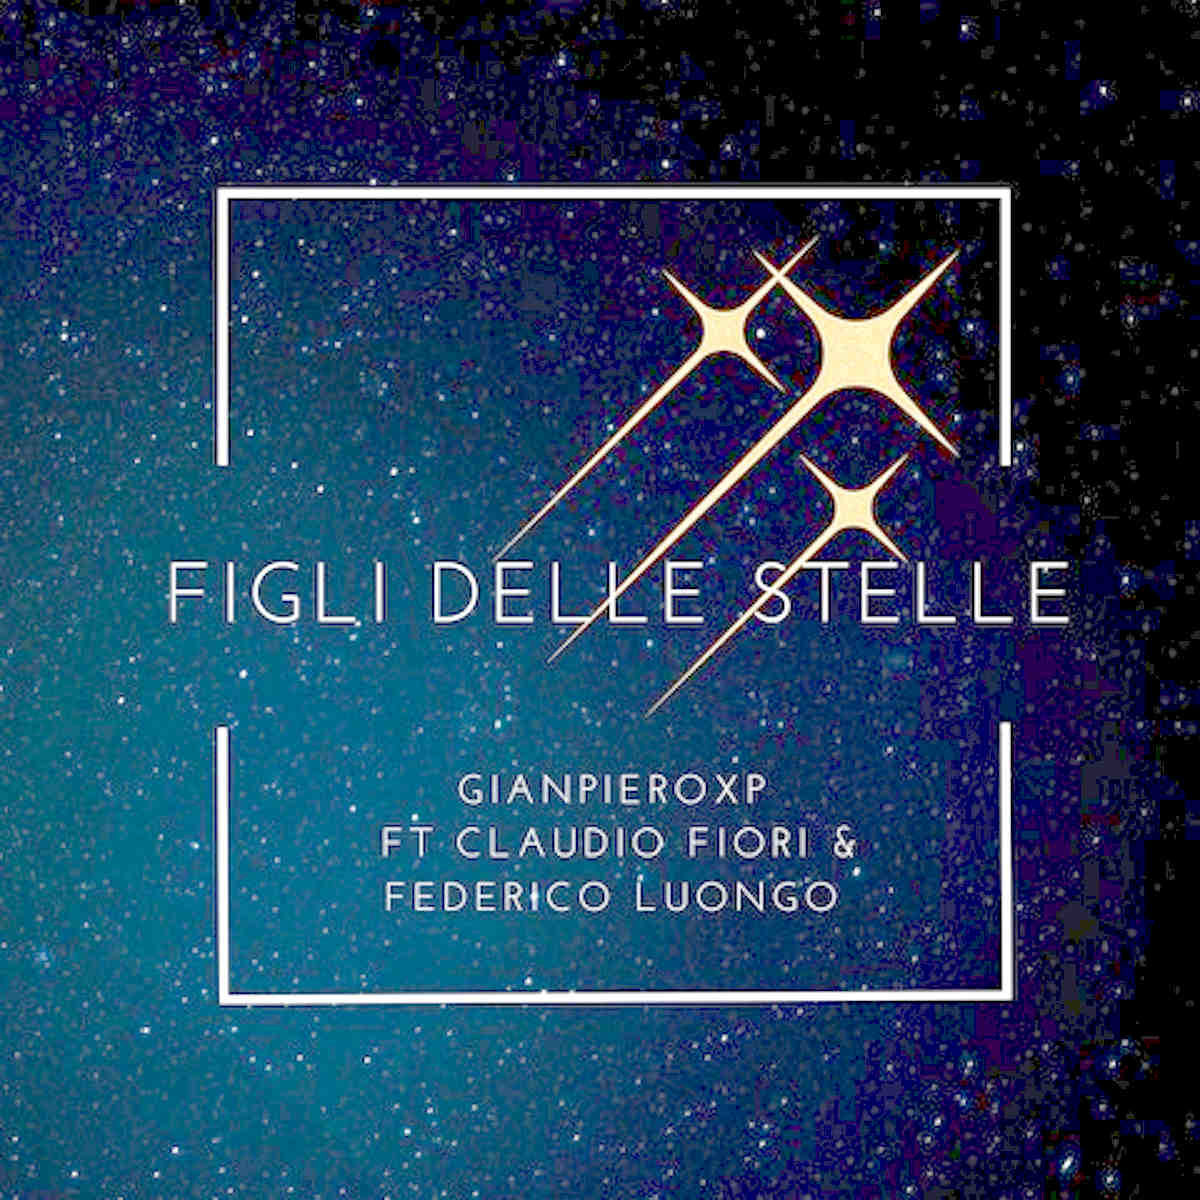 Figli delle stelle, la nuova cover ufficiale è firmata da Gianpiero Xp FT Claudio Fiori & Federico Luongo